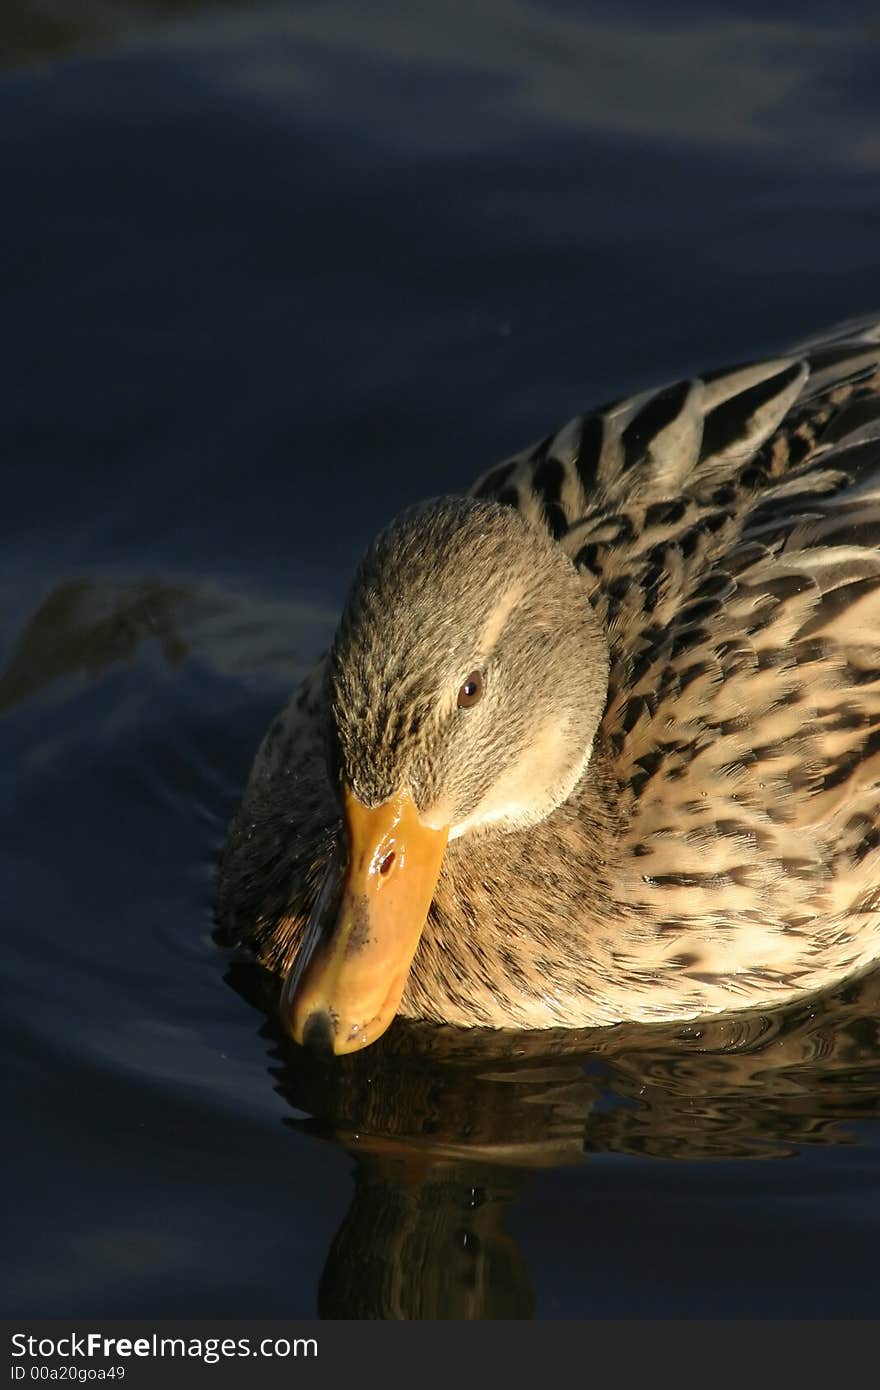 Female Mallard duck on water